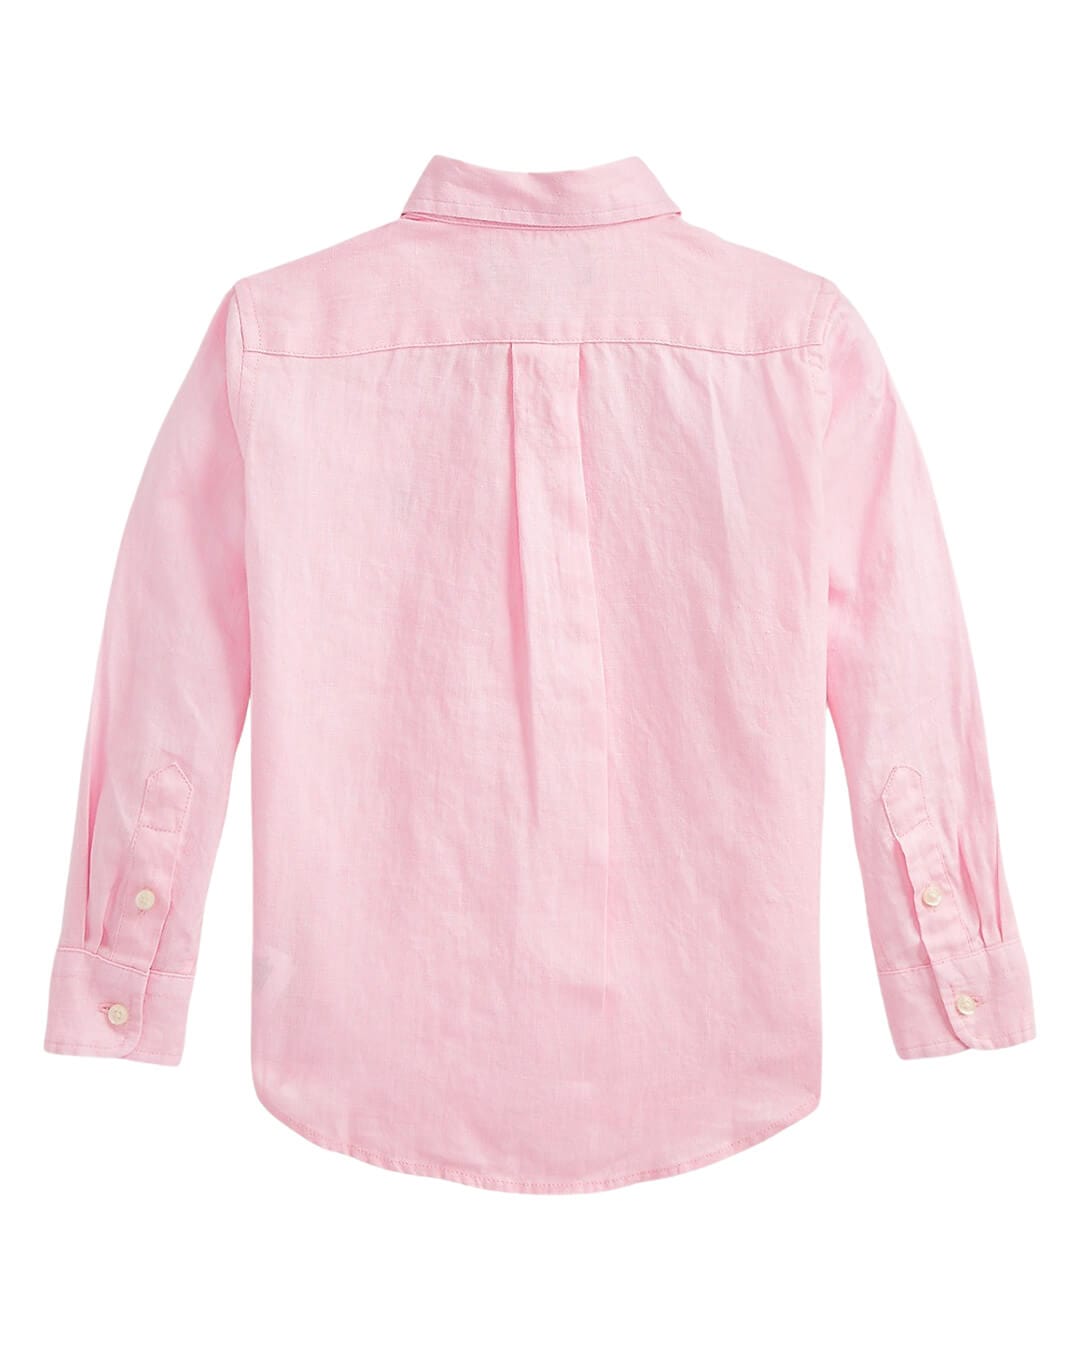 Polo Ralph Lauren Shirts Boys Polo Ralph Lauren Button Down Linen Pink Sport Shirt